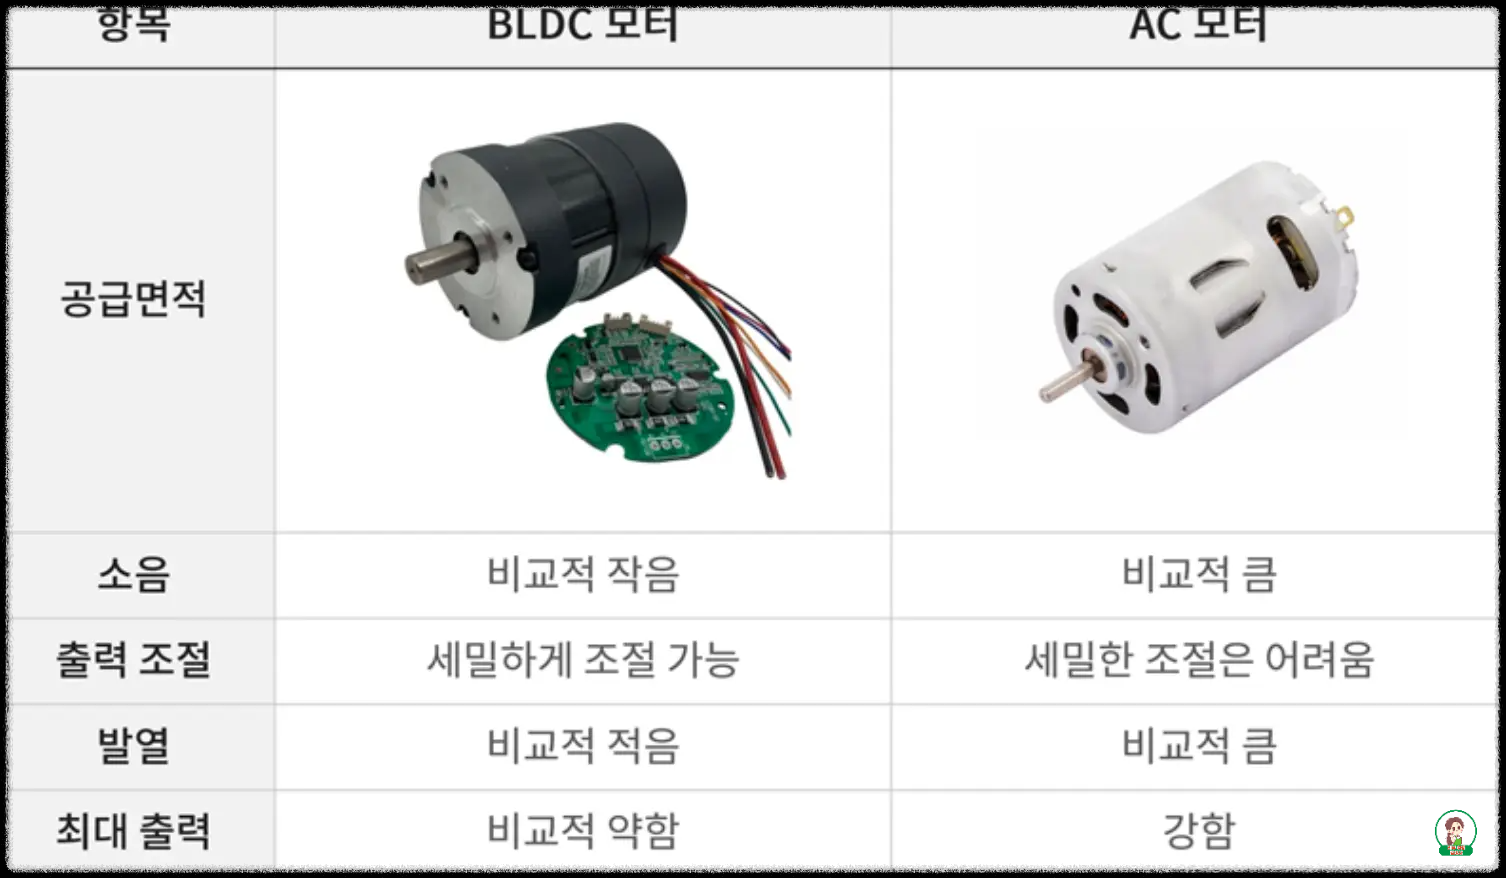 AC모터와 BLDC모터와의 차이점 표